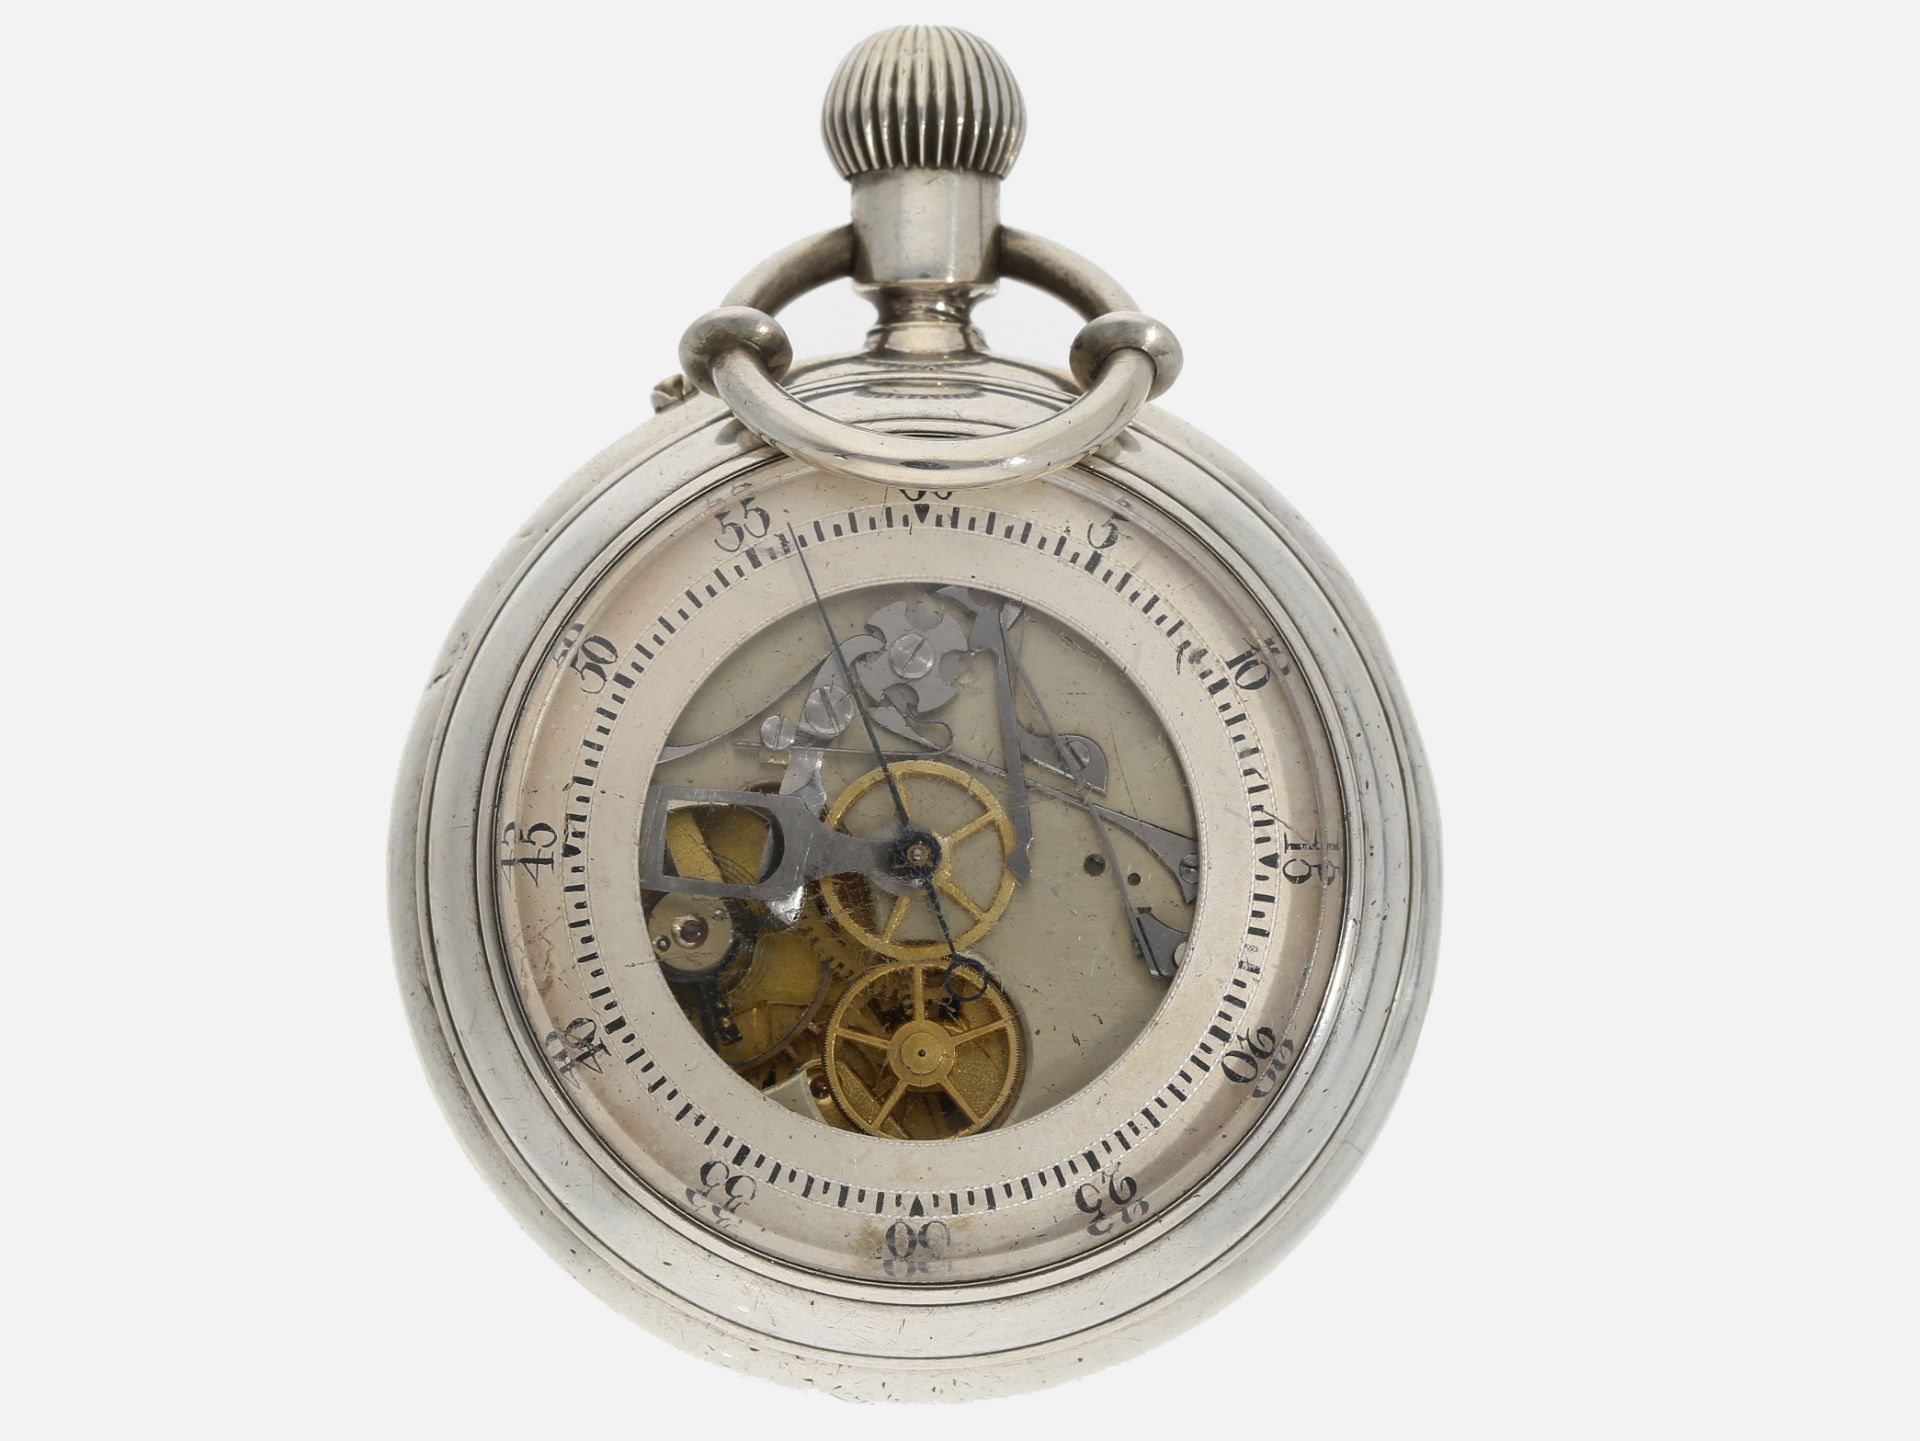 Taschenuhr: frühe, sehr seltene doppelseitige Taschenuhr mit Chronograph, verm. England um 1870, Ank - Bild 2 aus 3